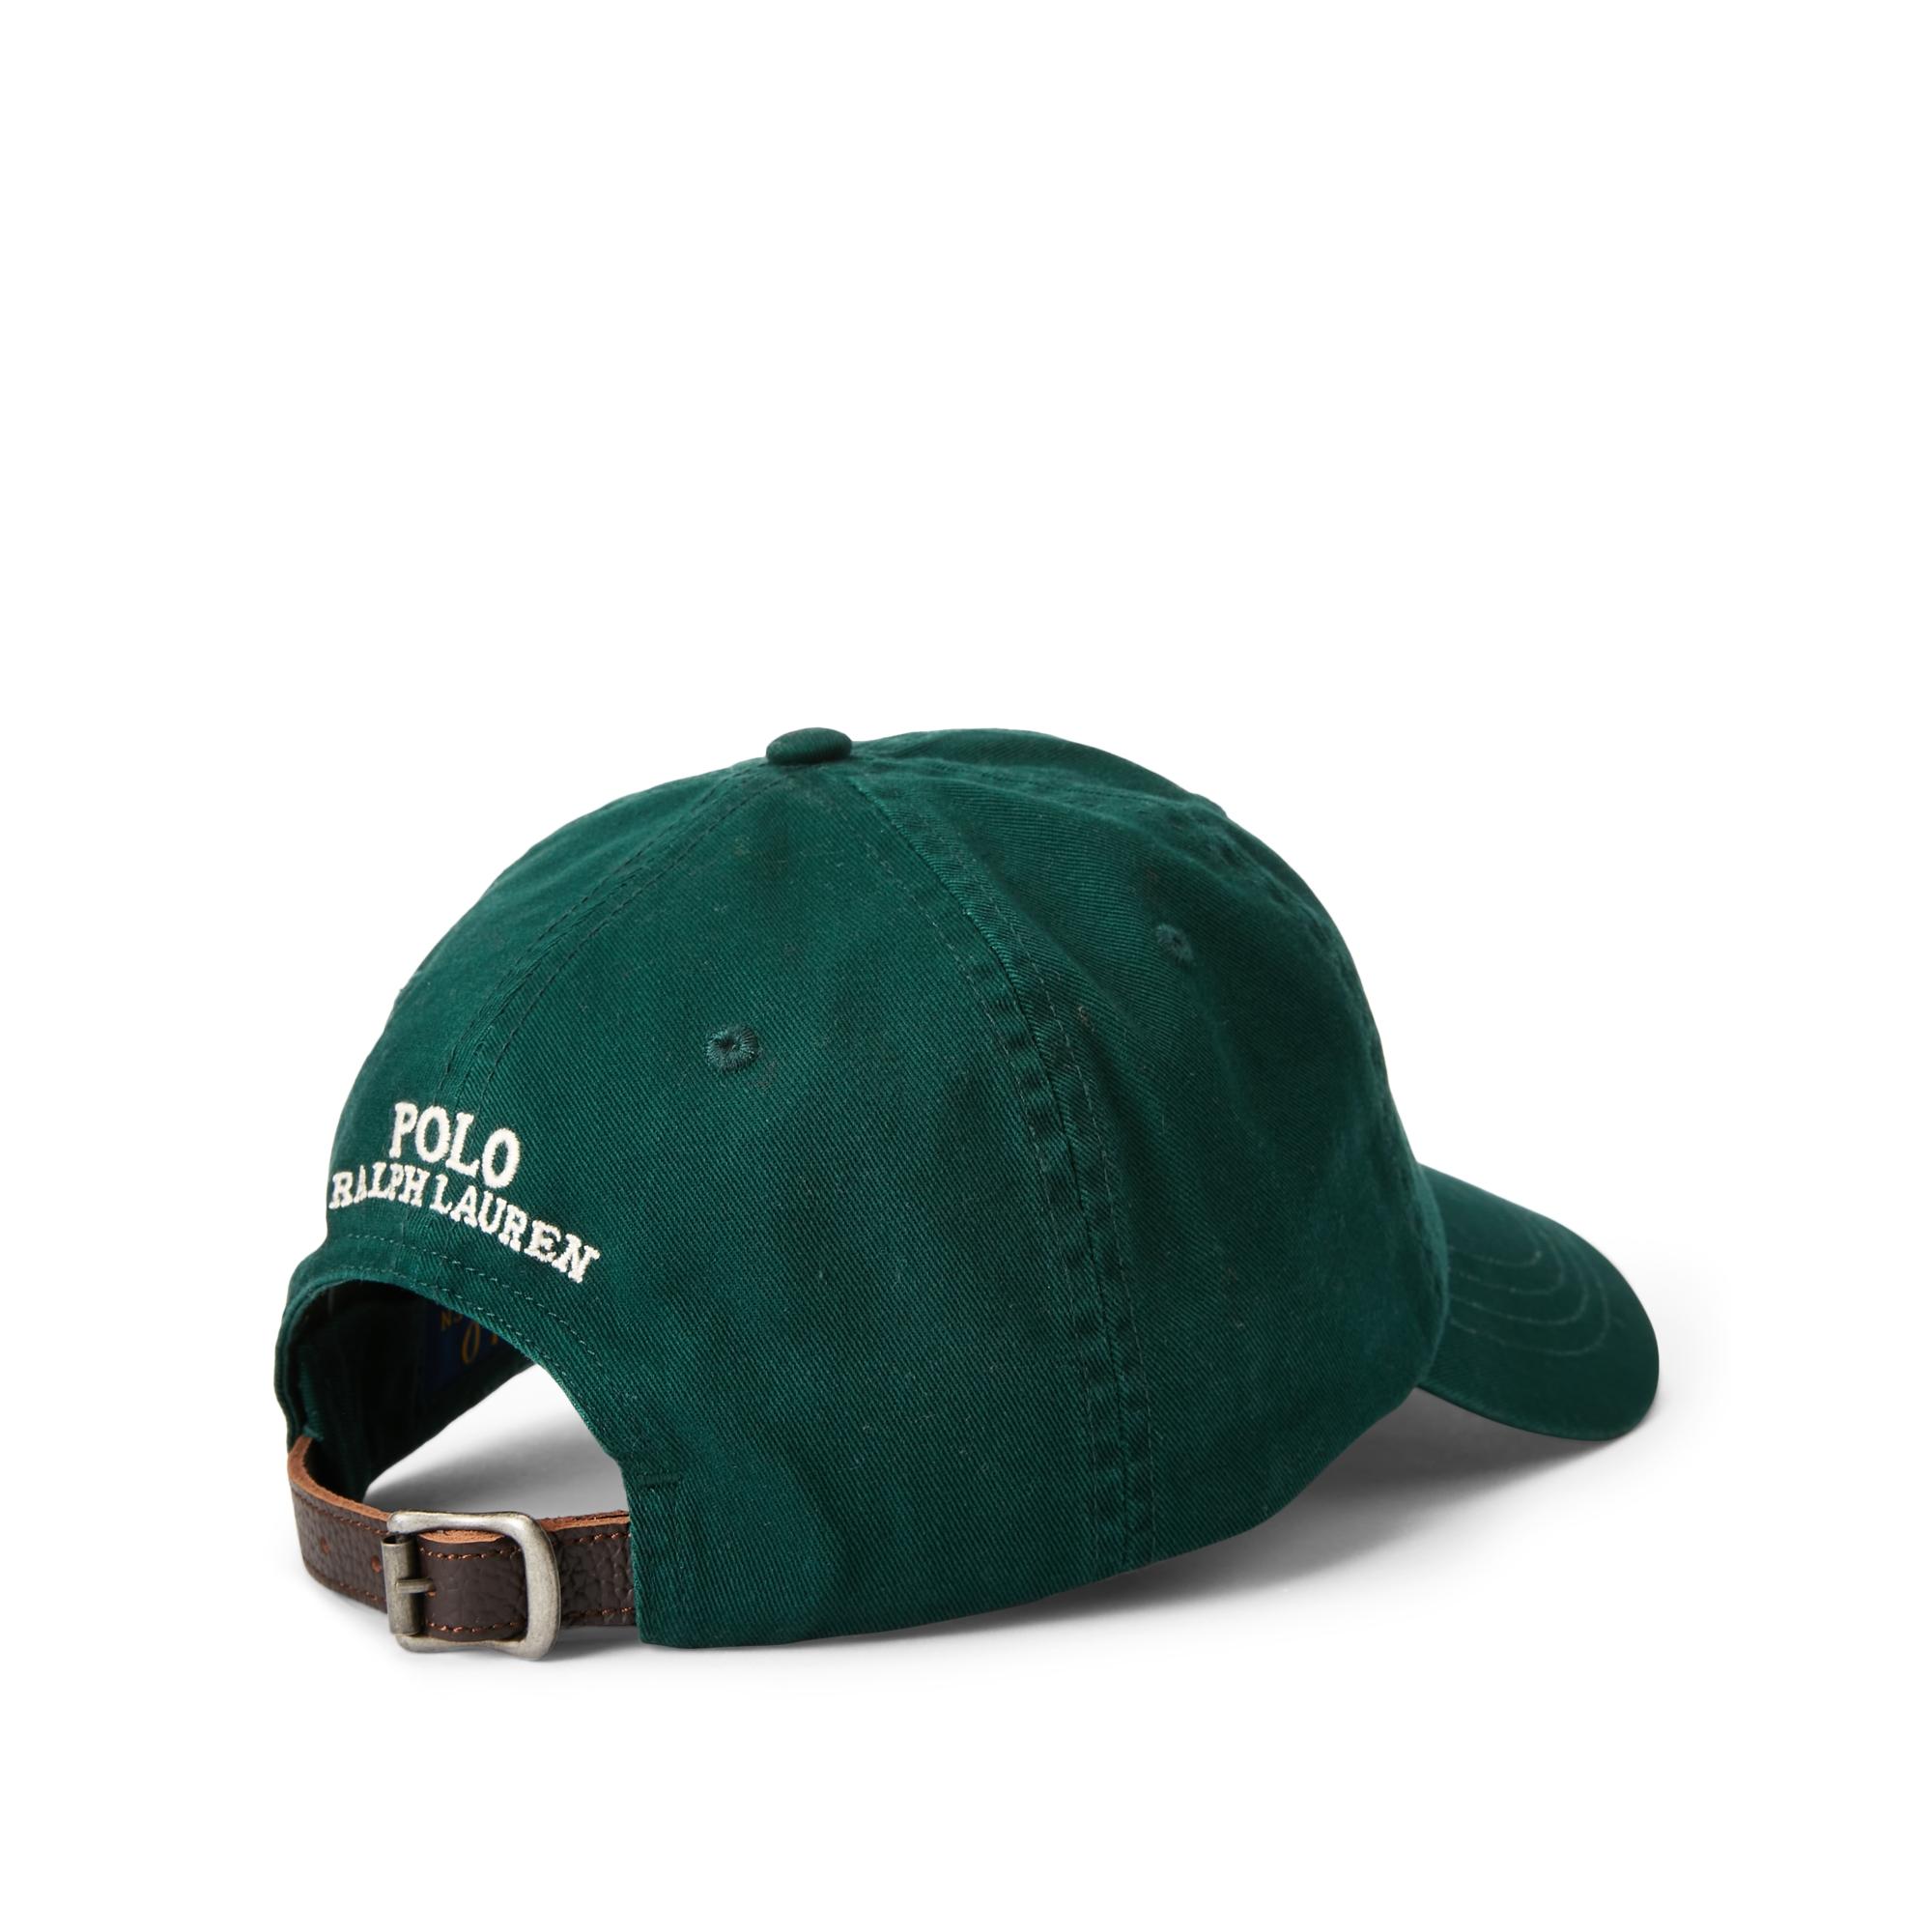 Green cap rust фото 18